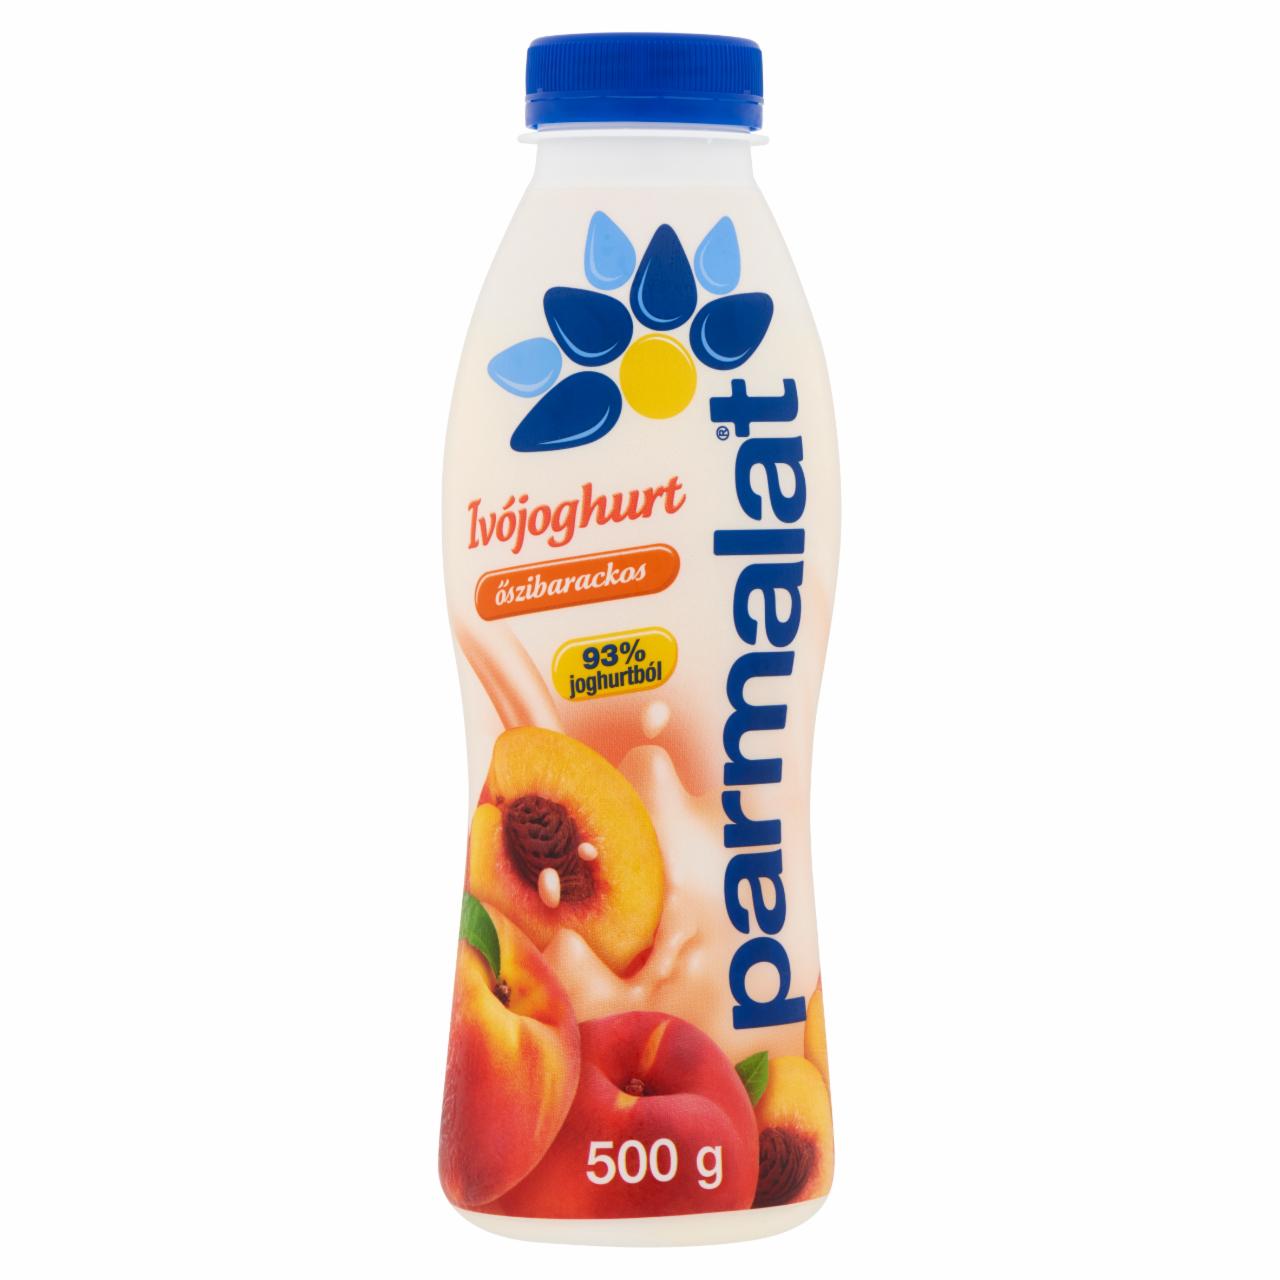 Képek - Parmalat zsírszegény őszibarackos ivójoghurt 500 g